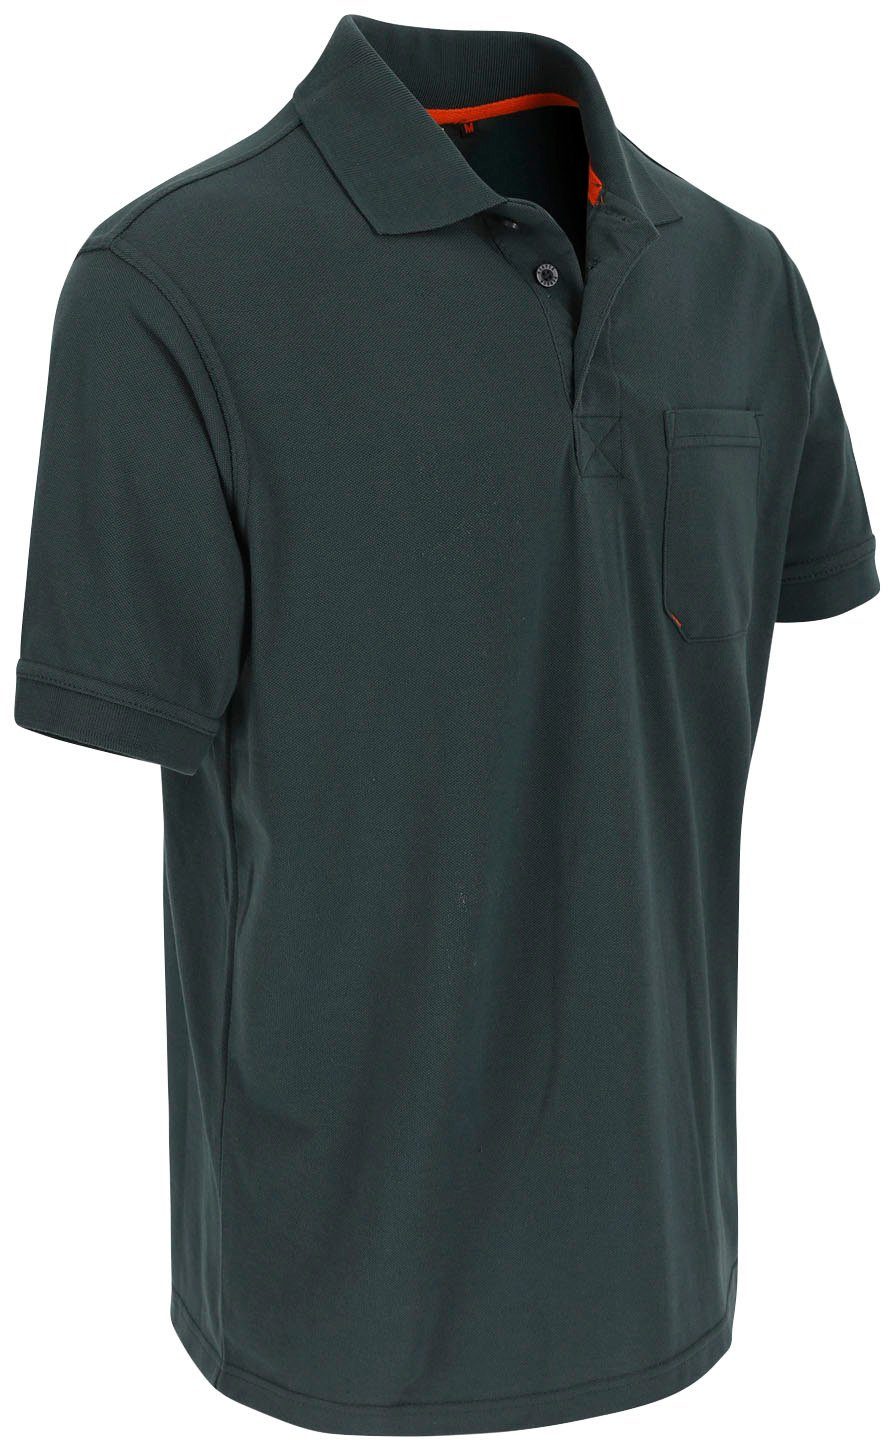 Poloshirt Rippstrick-Kragen und Leo Polohemd verschiedene 1 grün Farben Bündchen, Herock Kurzärmlig Brusttasche,